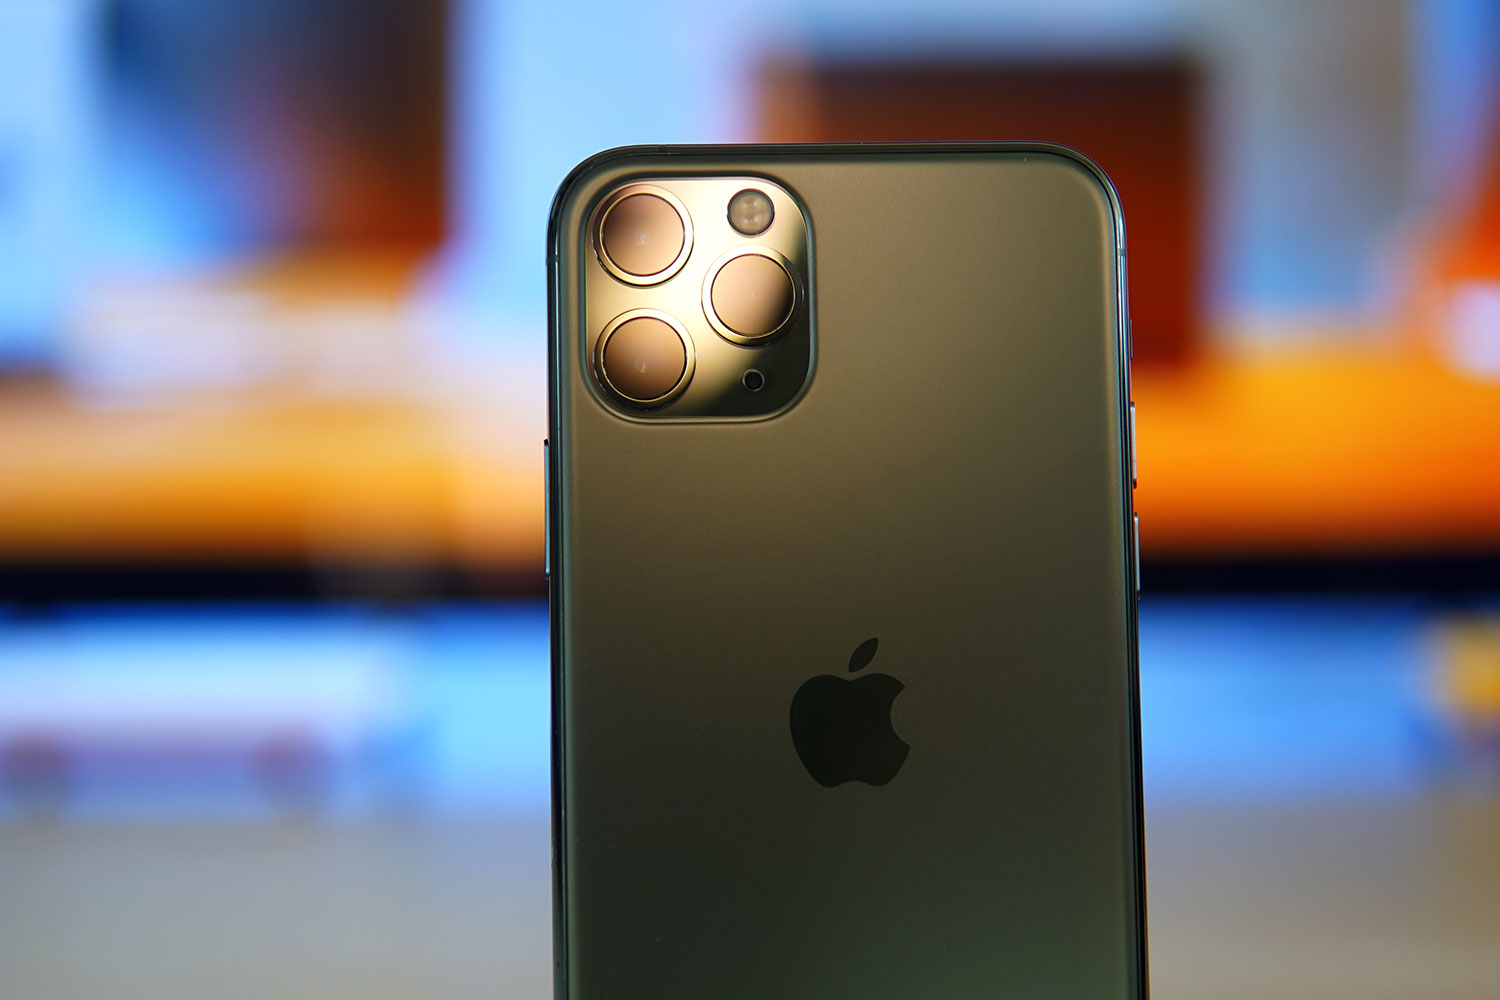 2020 iPhone Bisa Menampilkan Sistem Kamera Stabil Sensor-Shift Image 1